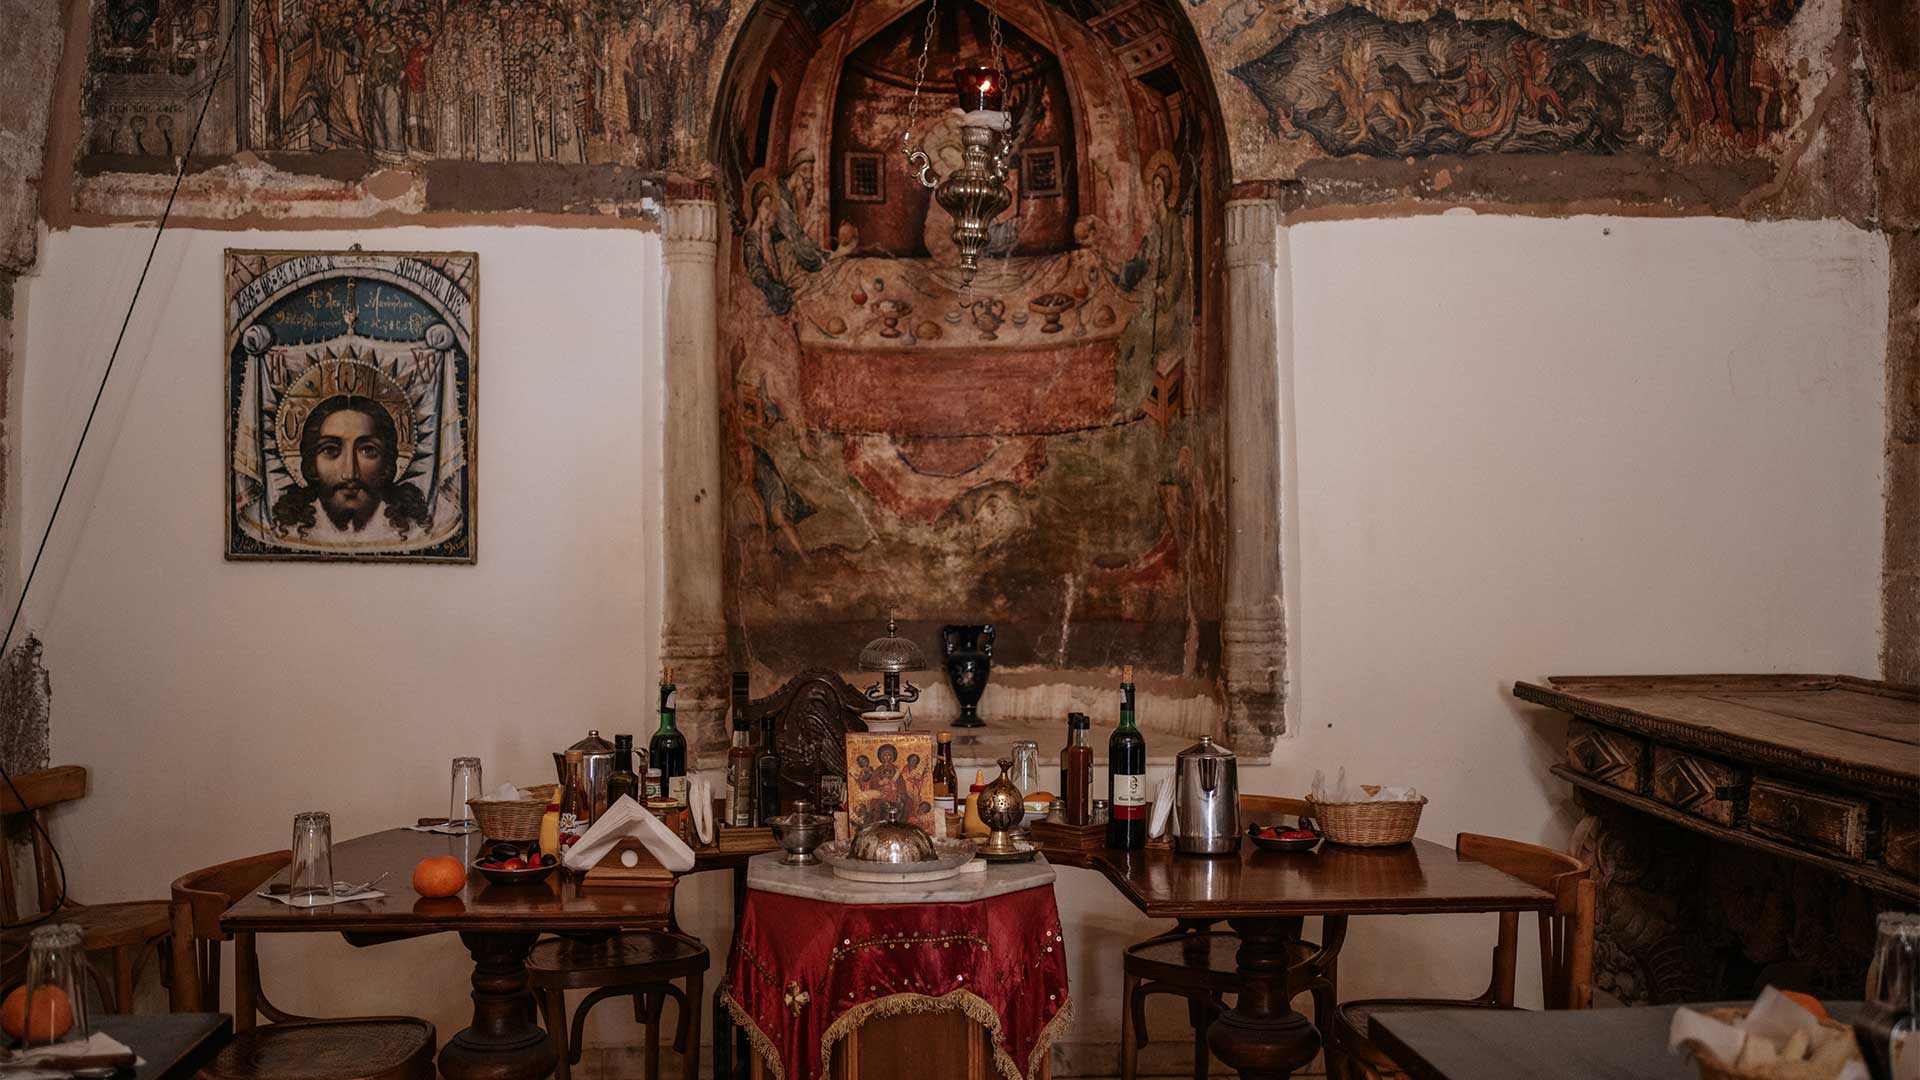 Η μοναστηριακή κουζίνα του όρους Σινά